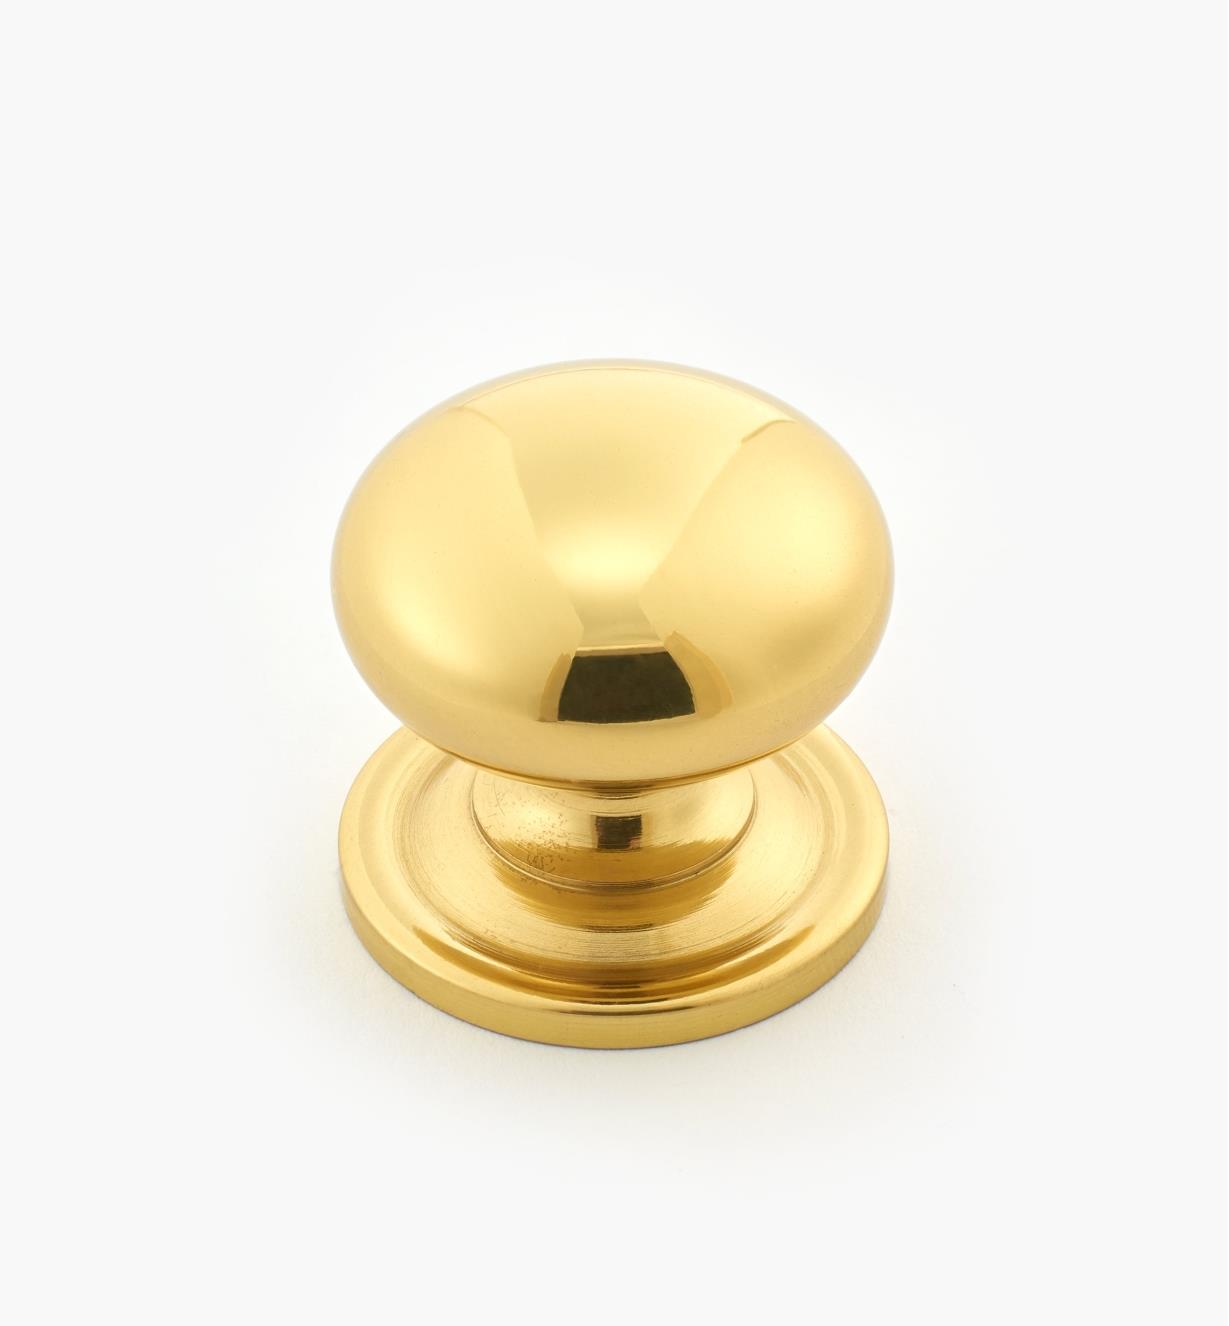 00W9010 - 1" x 1" Solid Brass Knob